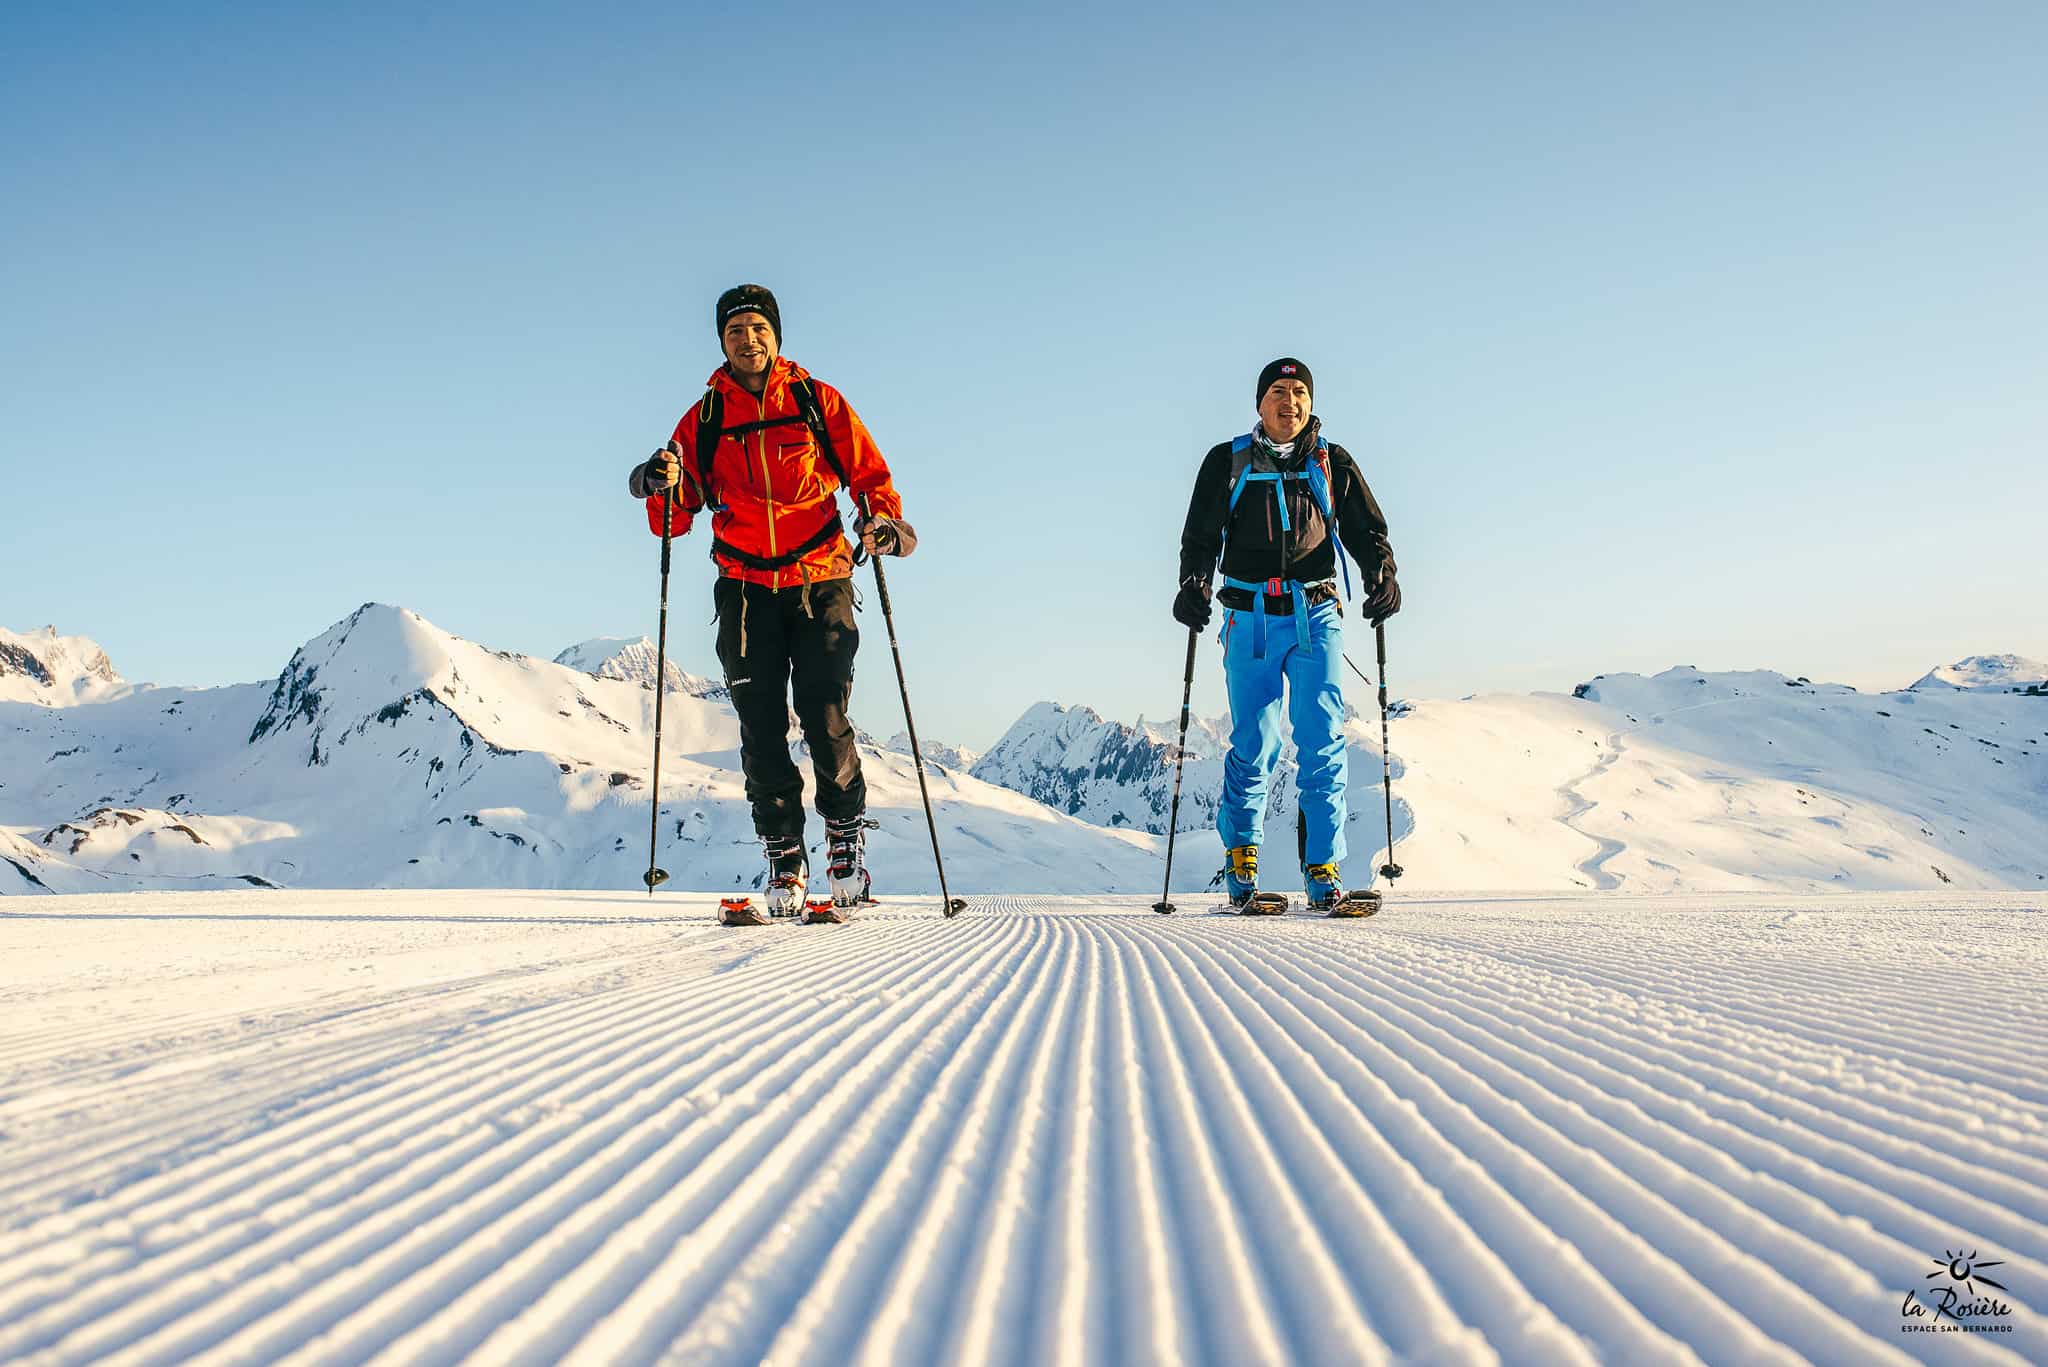 Que faire à la montagne sans ski alpin ?